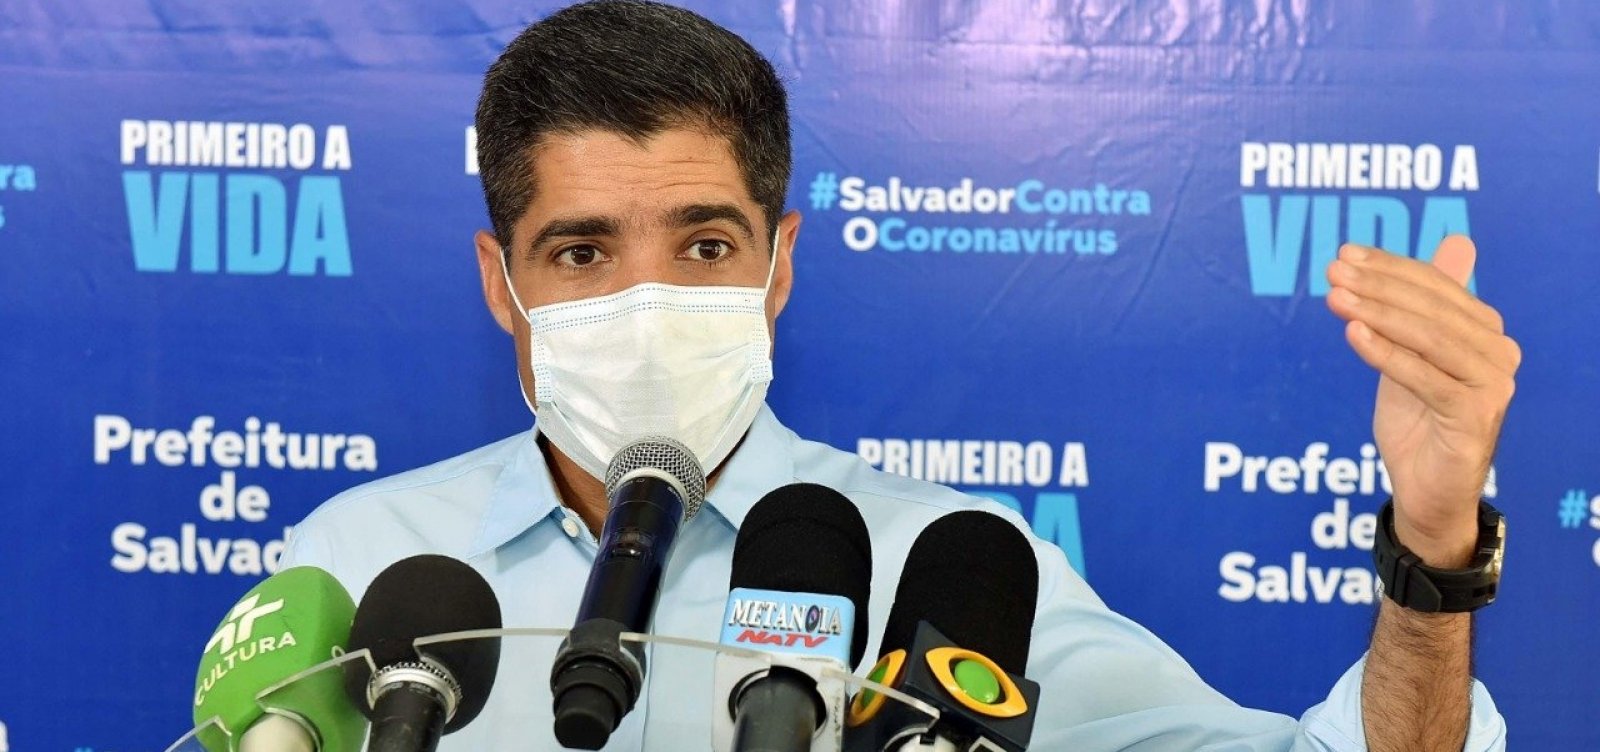 Prefeitura retira medidas restritivas de todos os bairros de Salvador